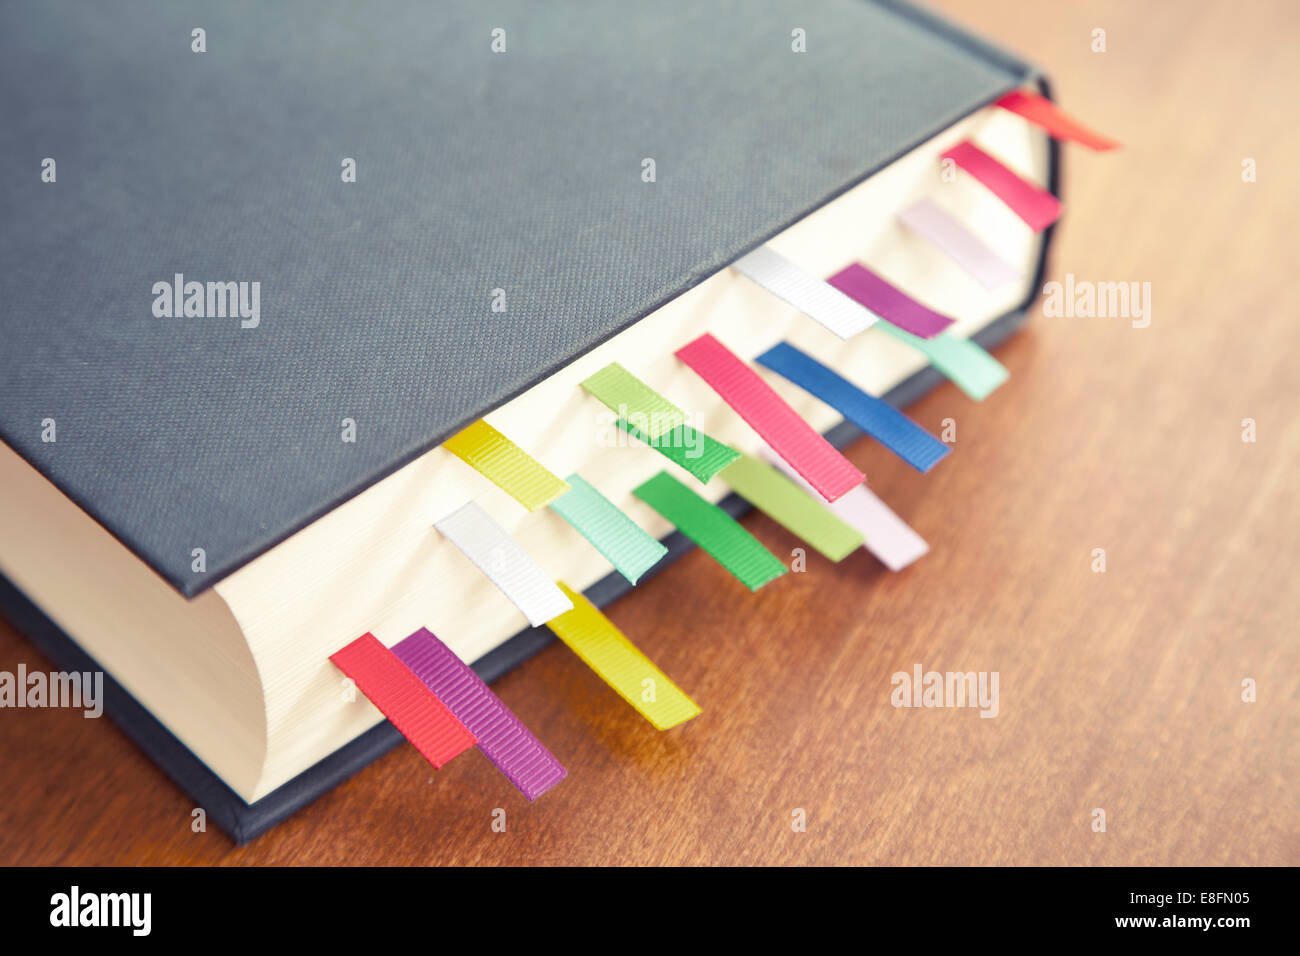 Primer plano de un libro de tapa dura sobre una mesa con marcadores de varios colores Foto de stock